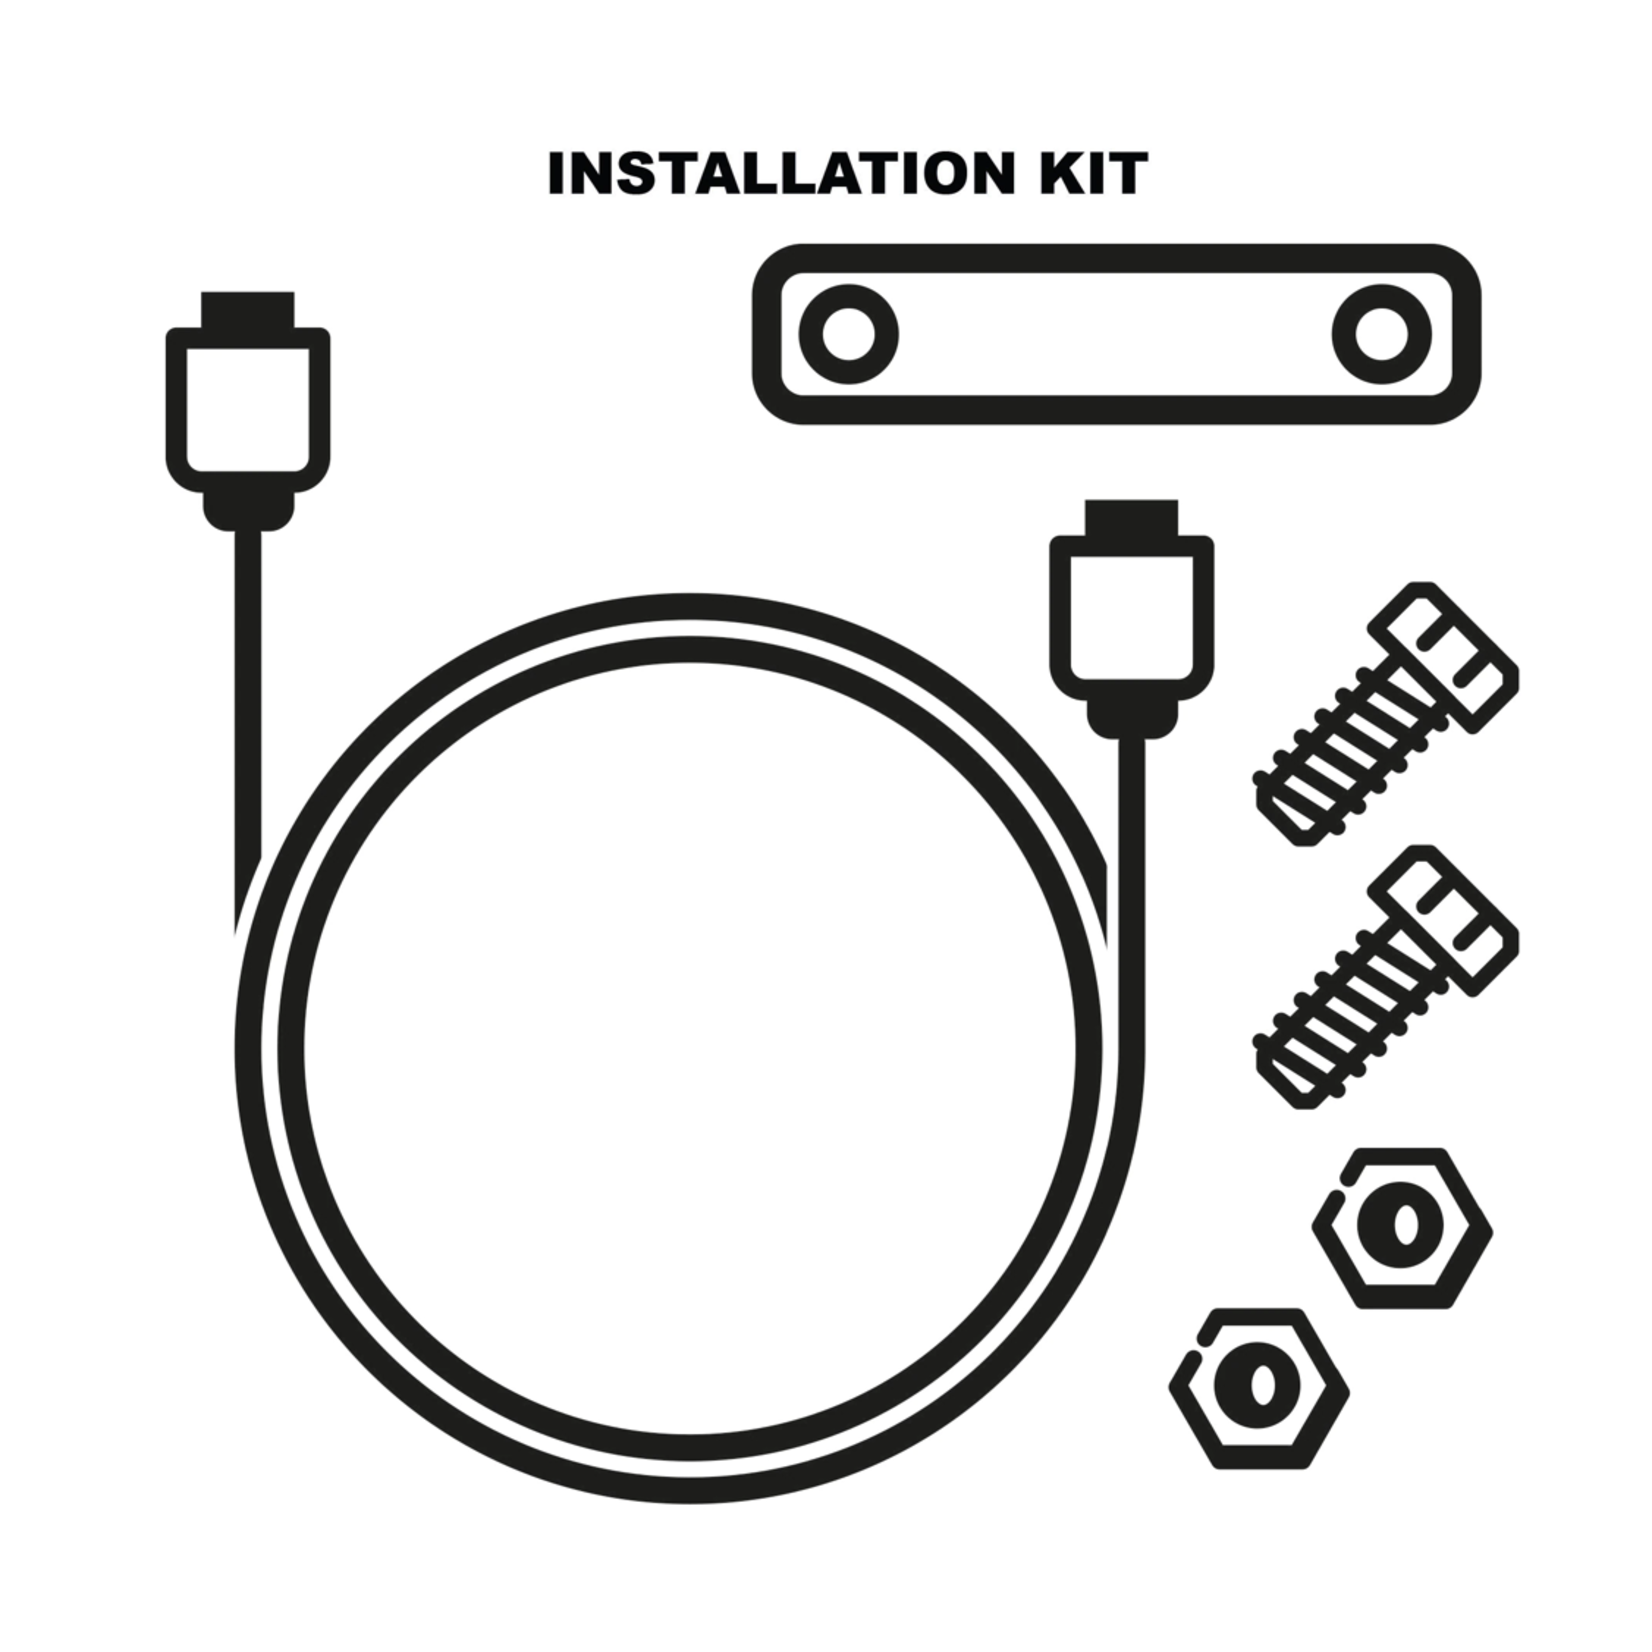 Antitheft Installation Kit